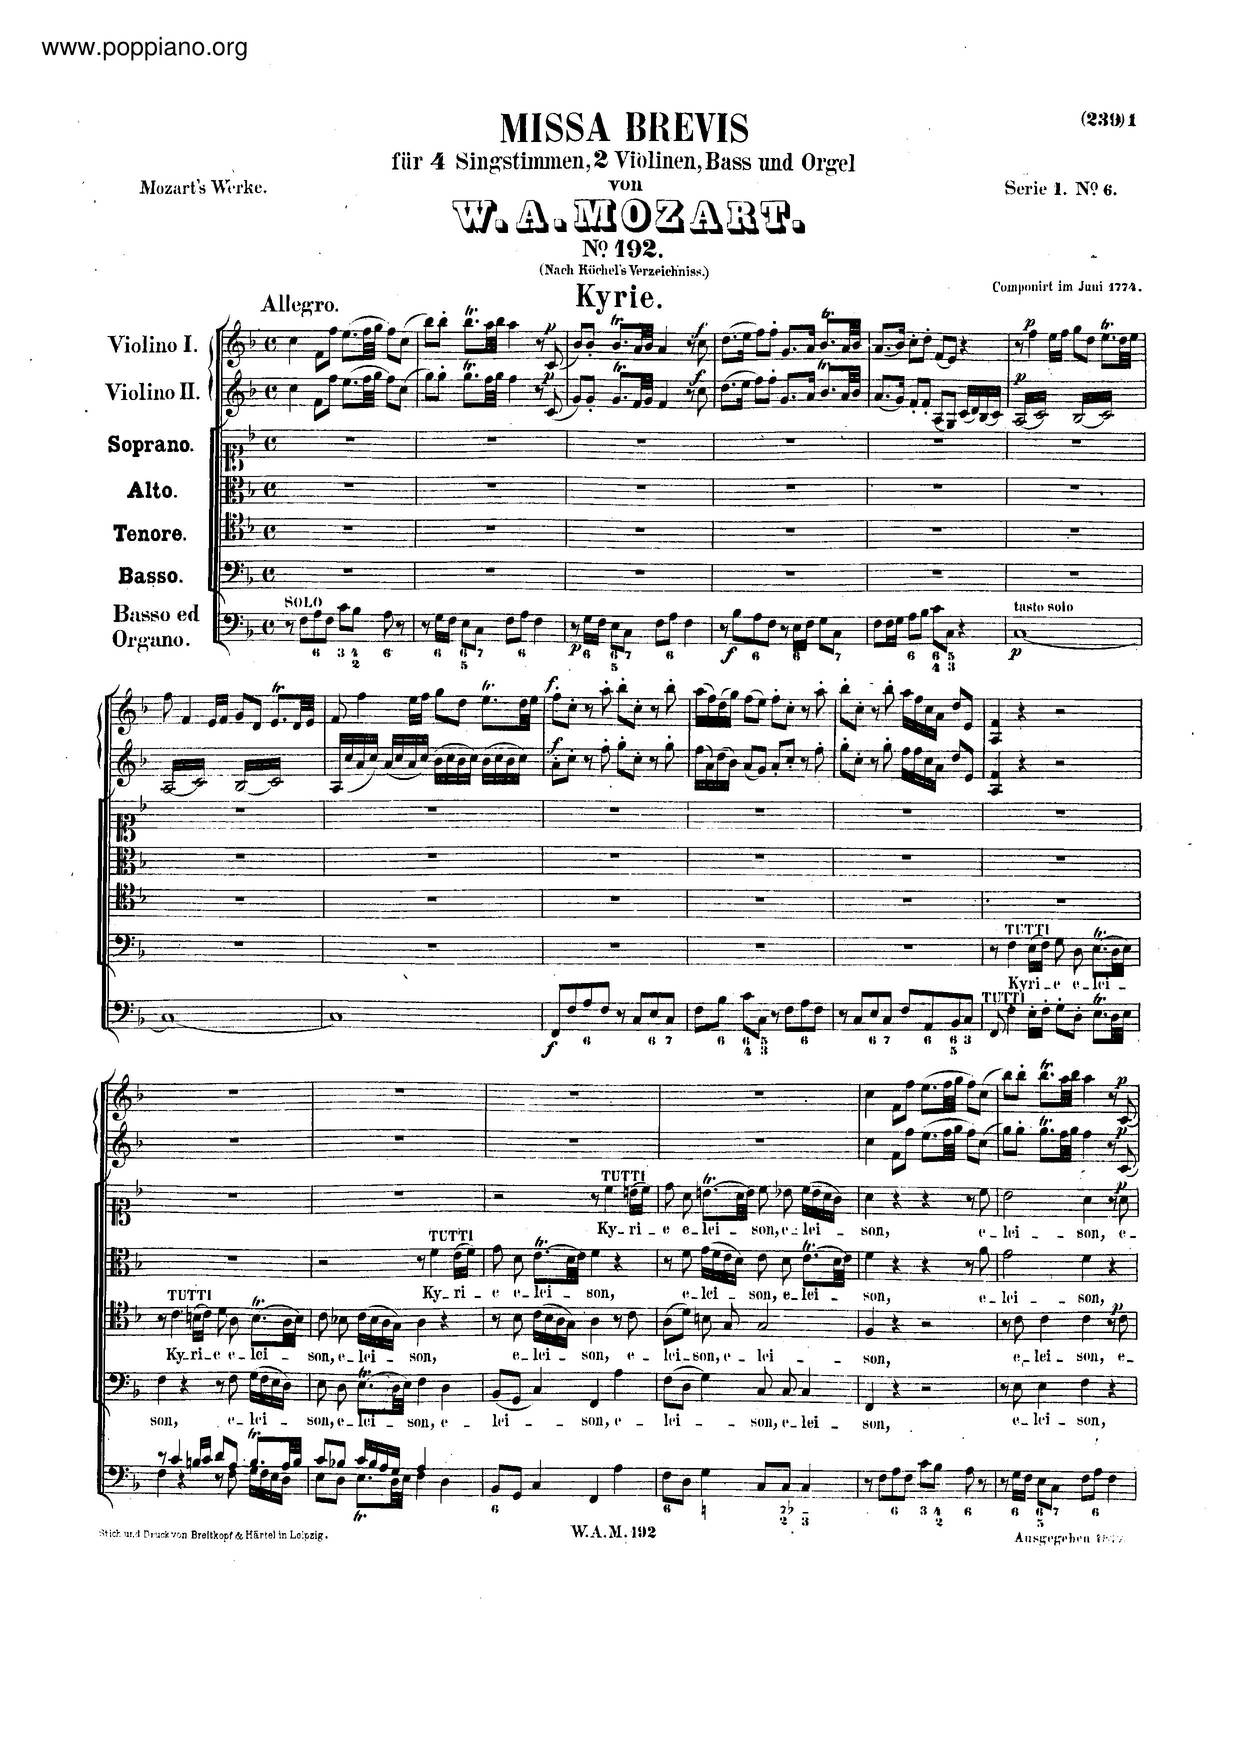 Missa Brevis In F Major, K. 192/186Fピアノ譜